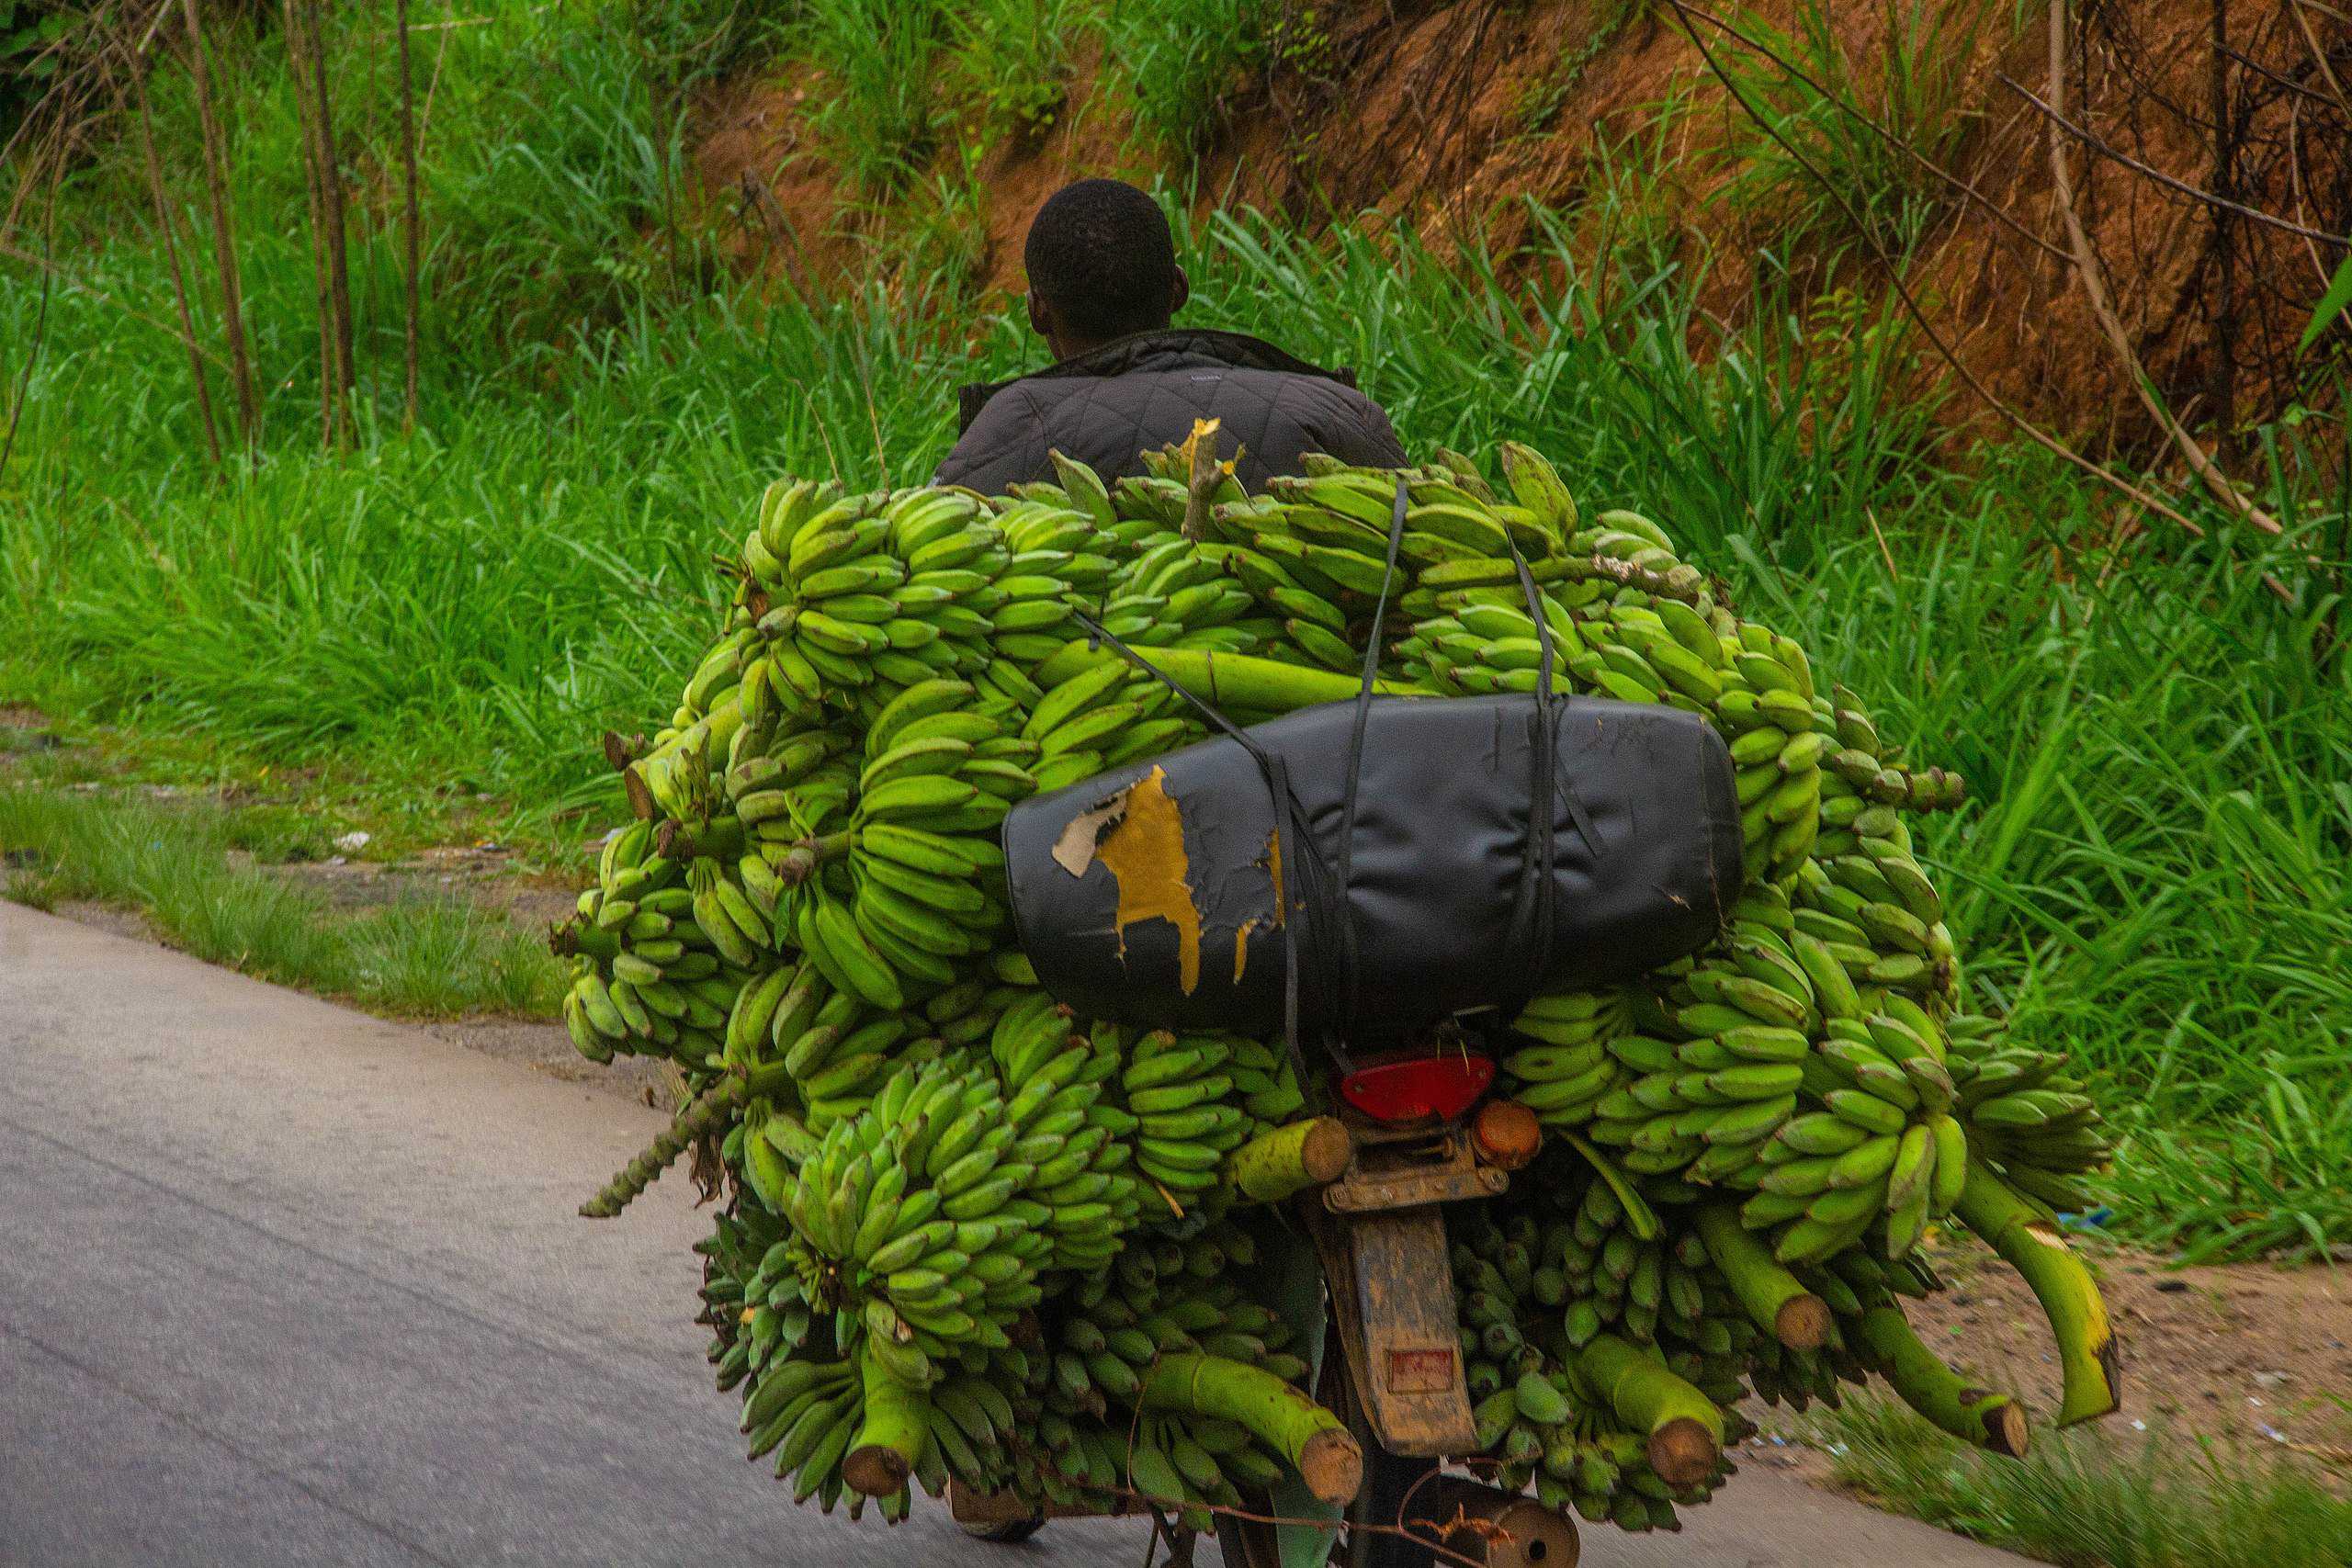 Man transporting bananas to market, Osun state, Nigeria